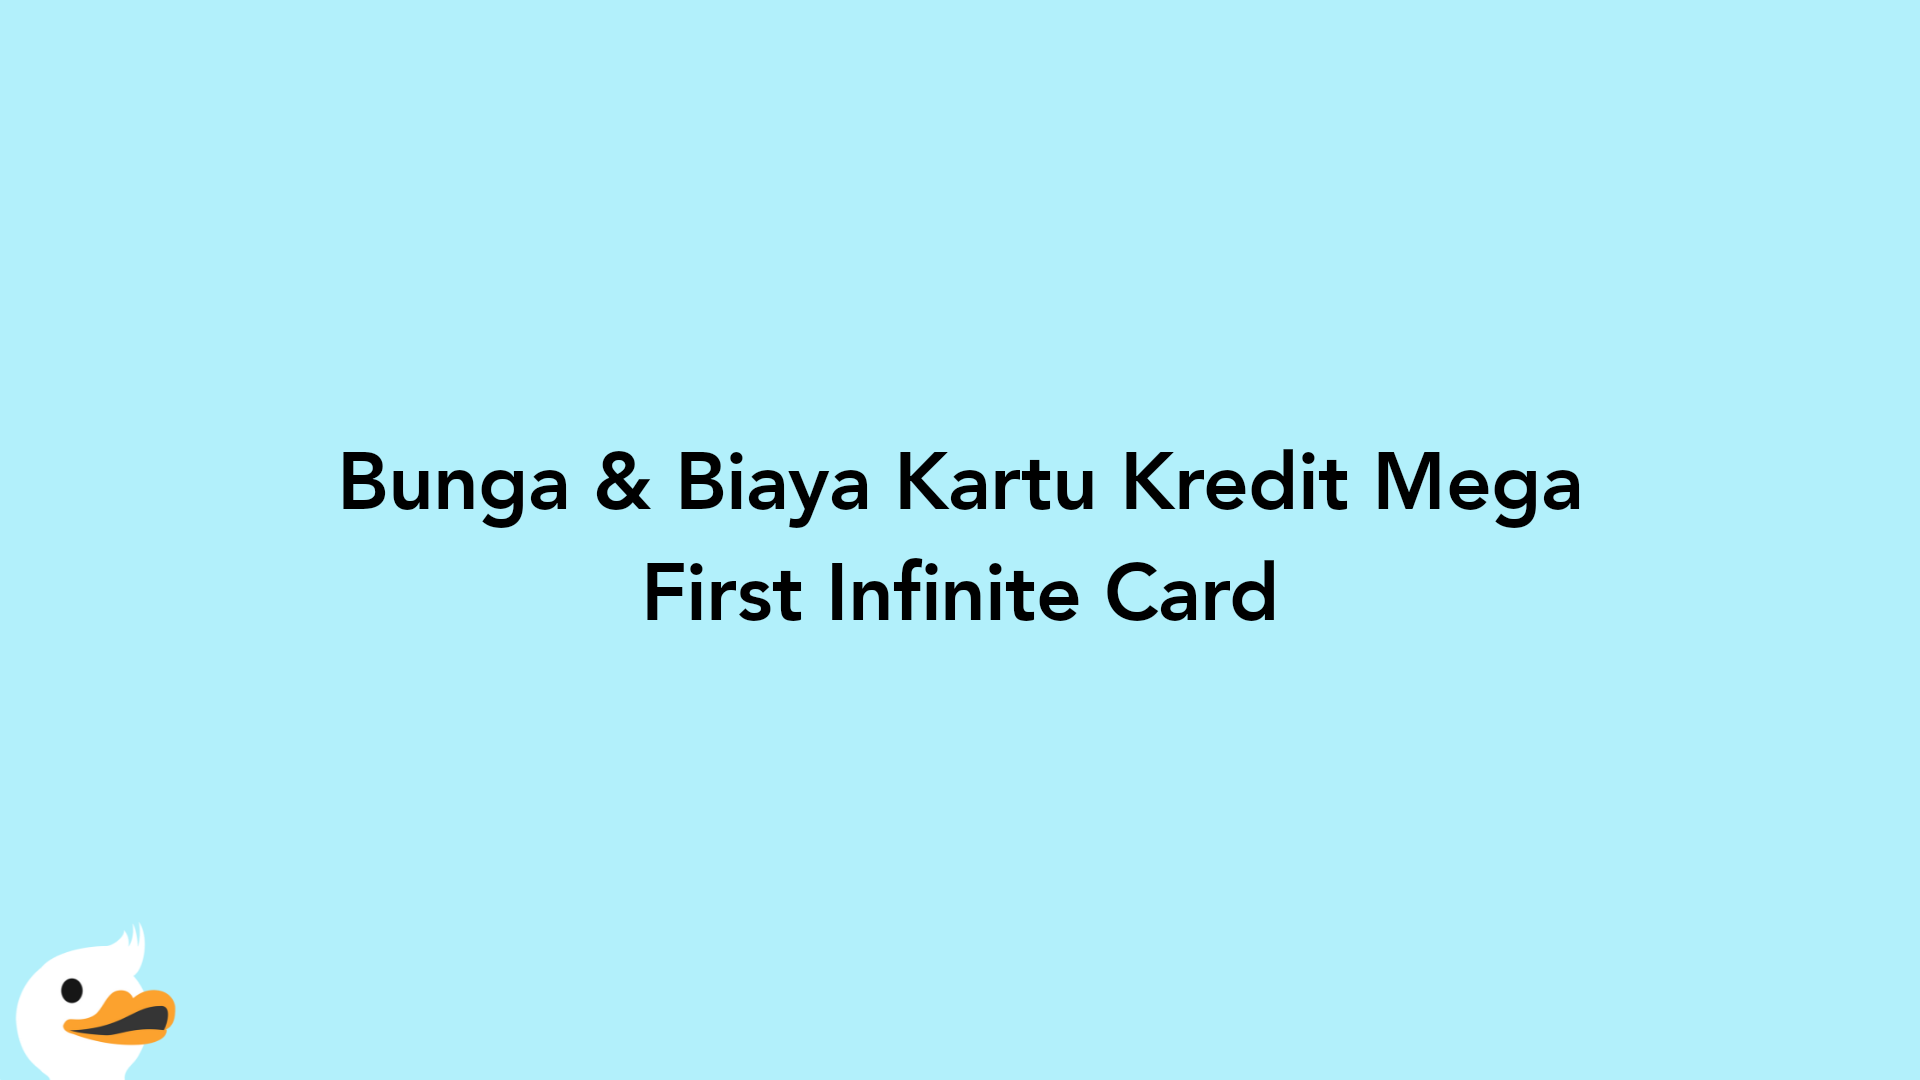 Bunga & Biaya Kartu Kredit Mega First Infinite Card